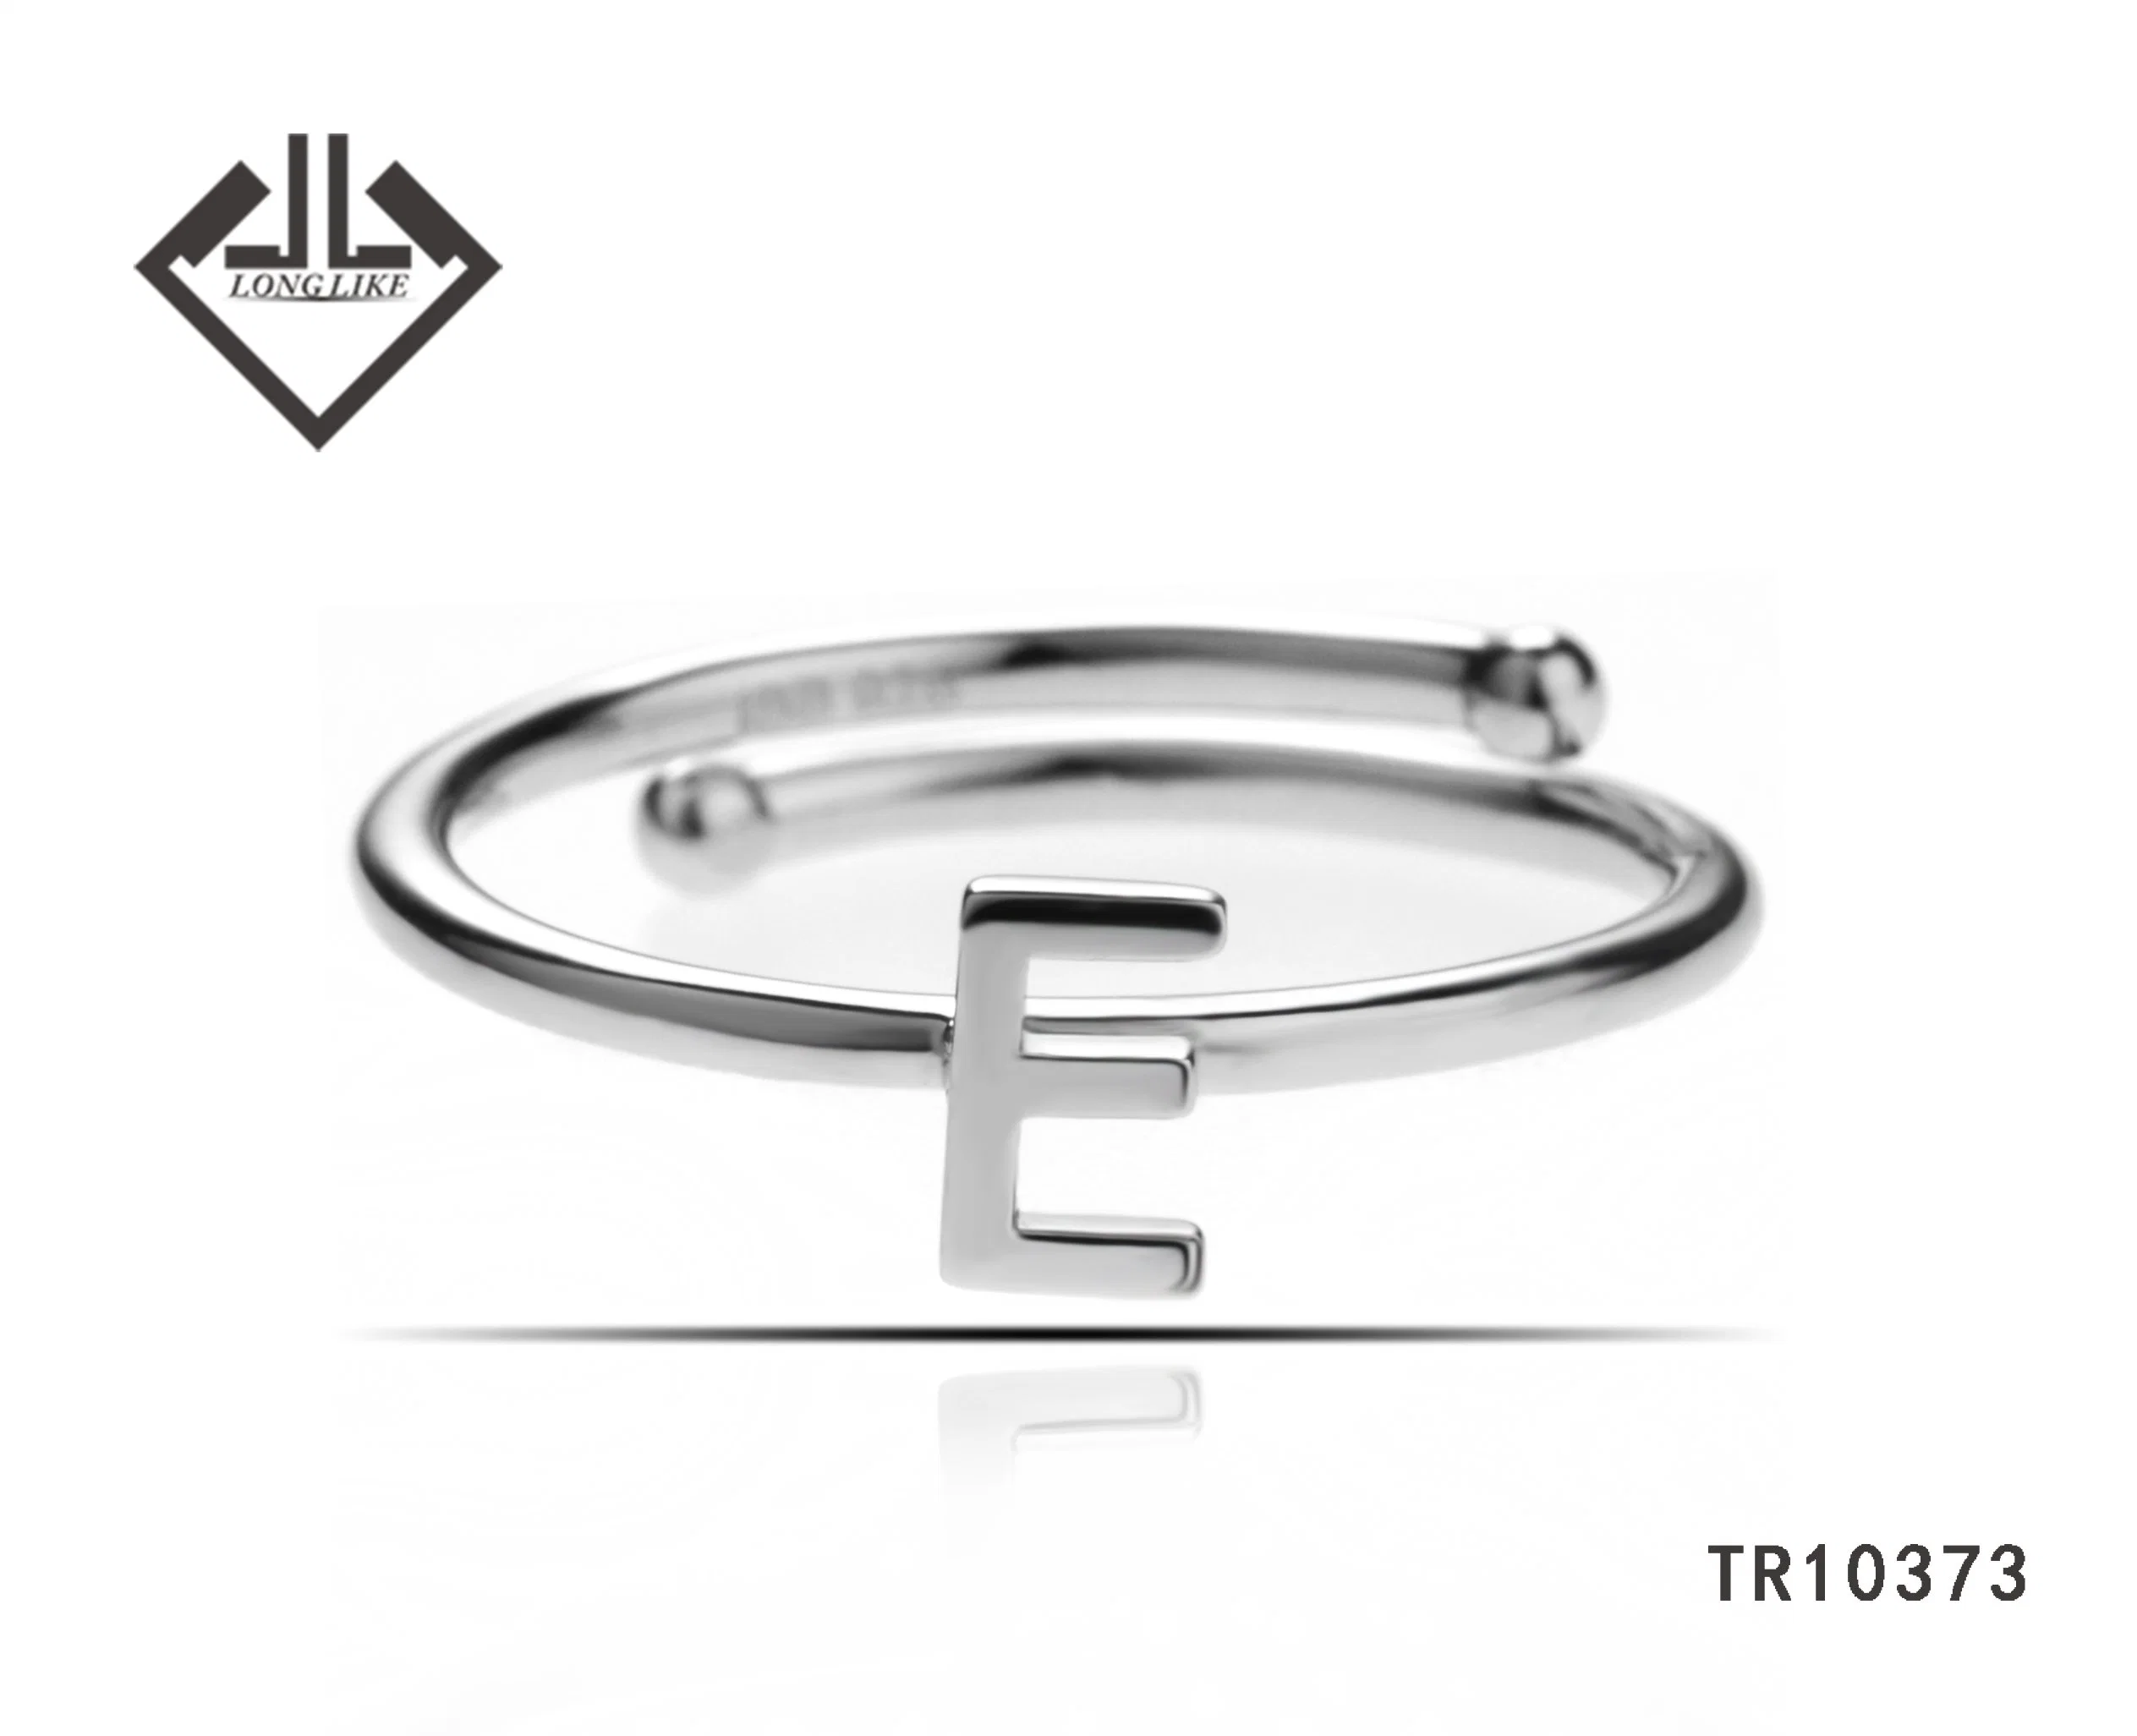 Moda Sterling Plata Joyería Alfabeto Carta anillo opable anillo ajustable